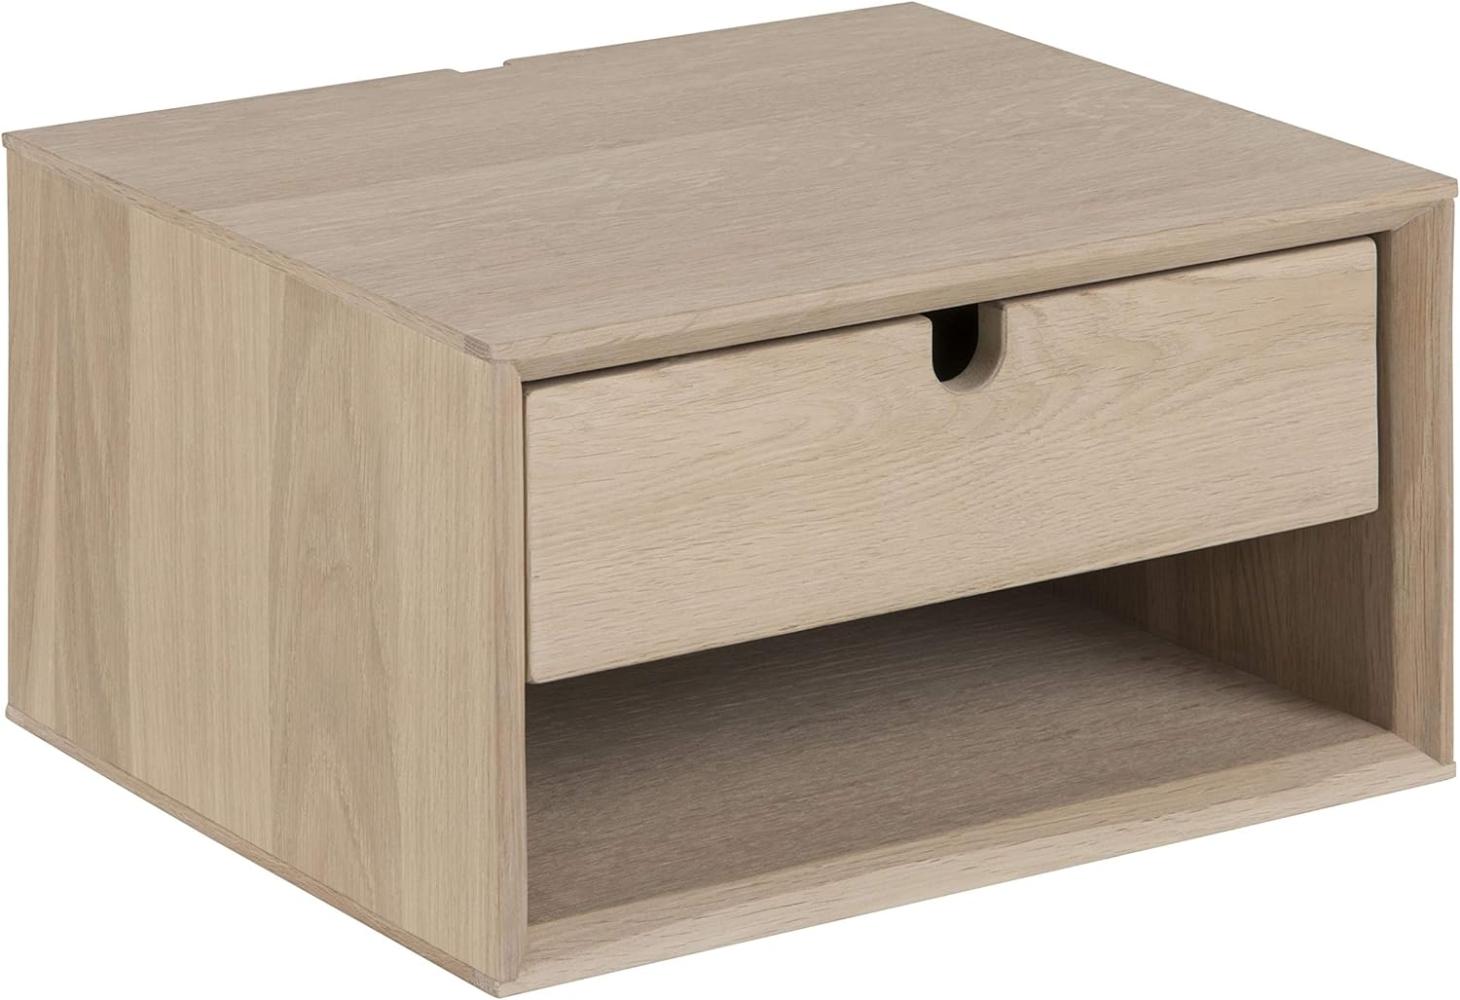 AC Design Furniture Lena Nachttisch aus Holz für Wandmontage, Beistelltisch mit 1 Schublade, Wandregal fürs Schlafzimmer, B: 37 x T: 32 x H: 21 cm, Eiche Furnier, 1 Stk. Bild 1